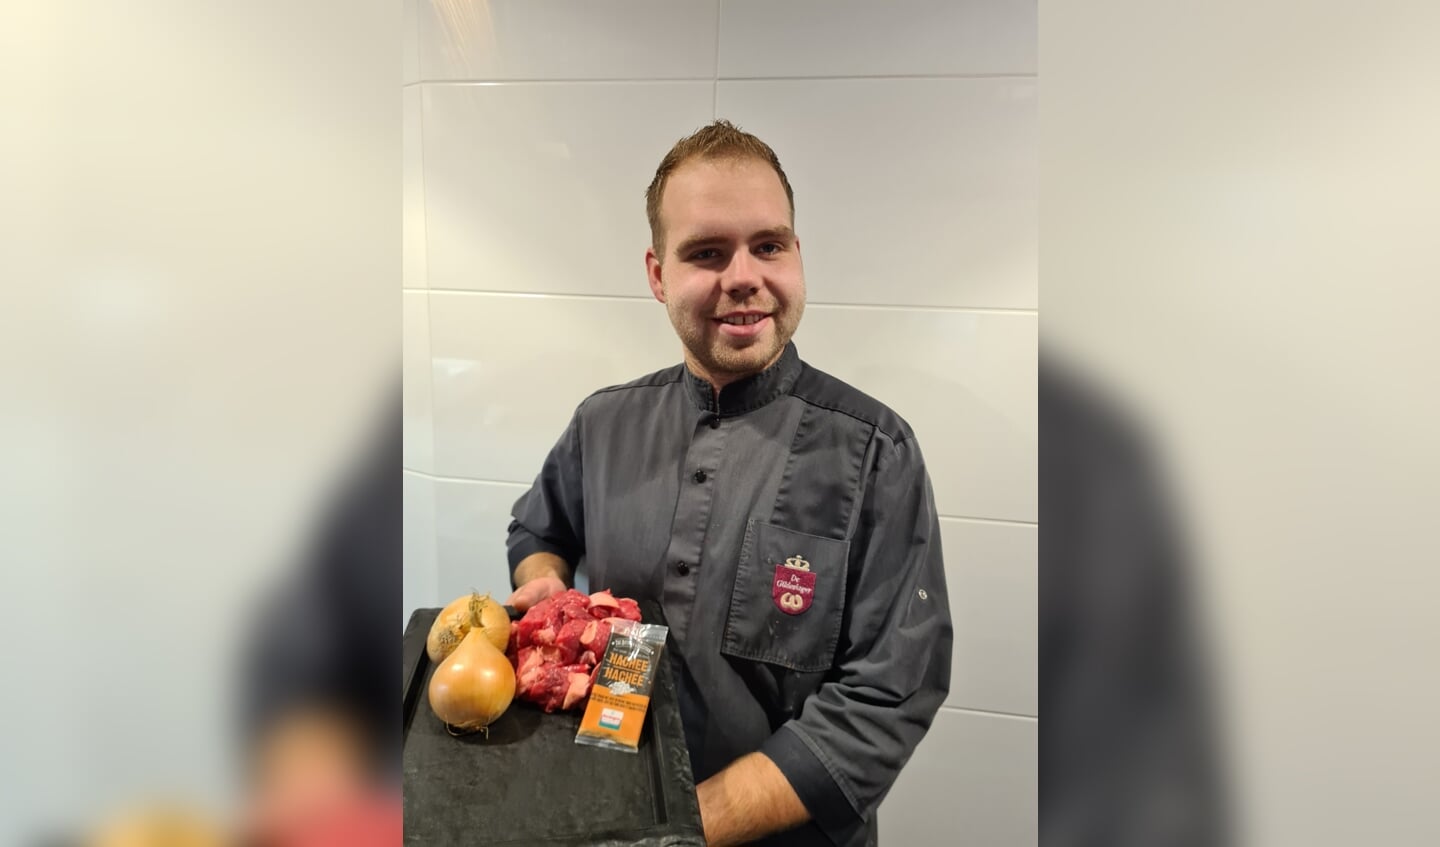 Hachéepakket

500 gram hachéevlees met gratis uien en kruiden

samen voor €6,95